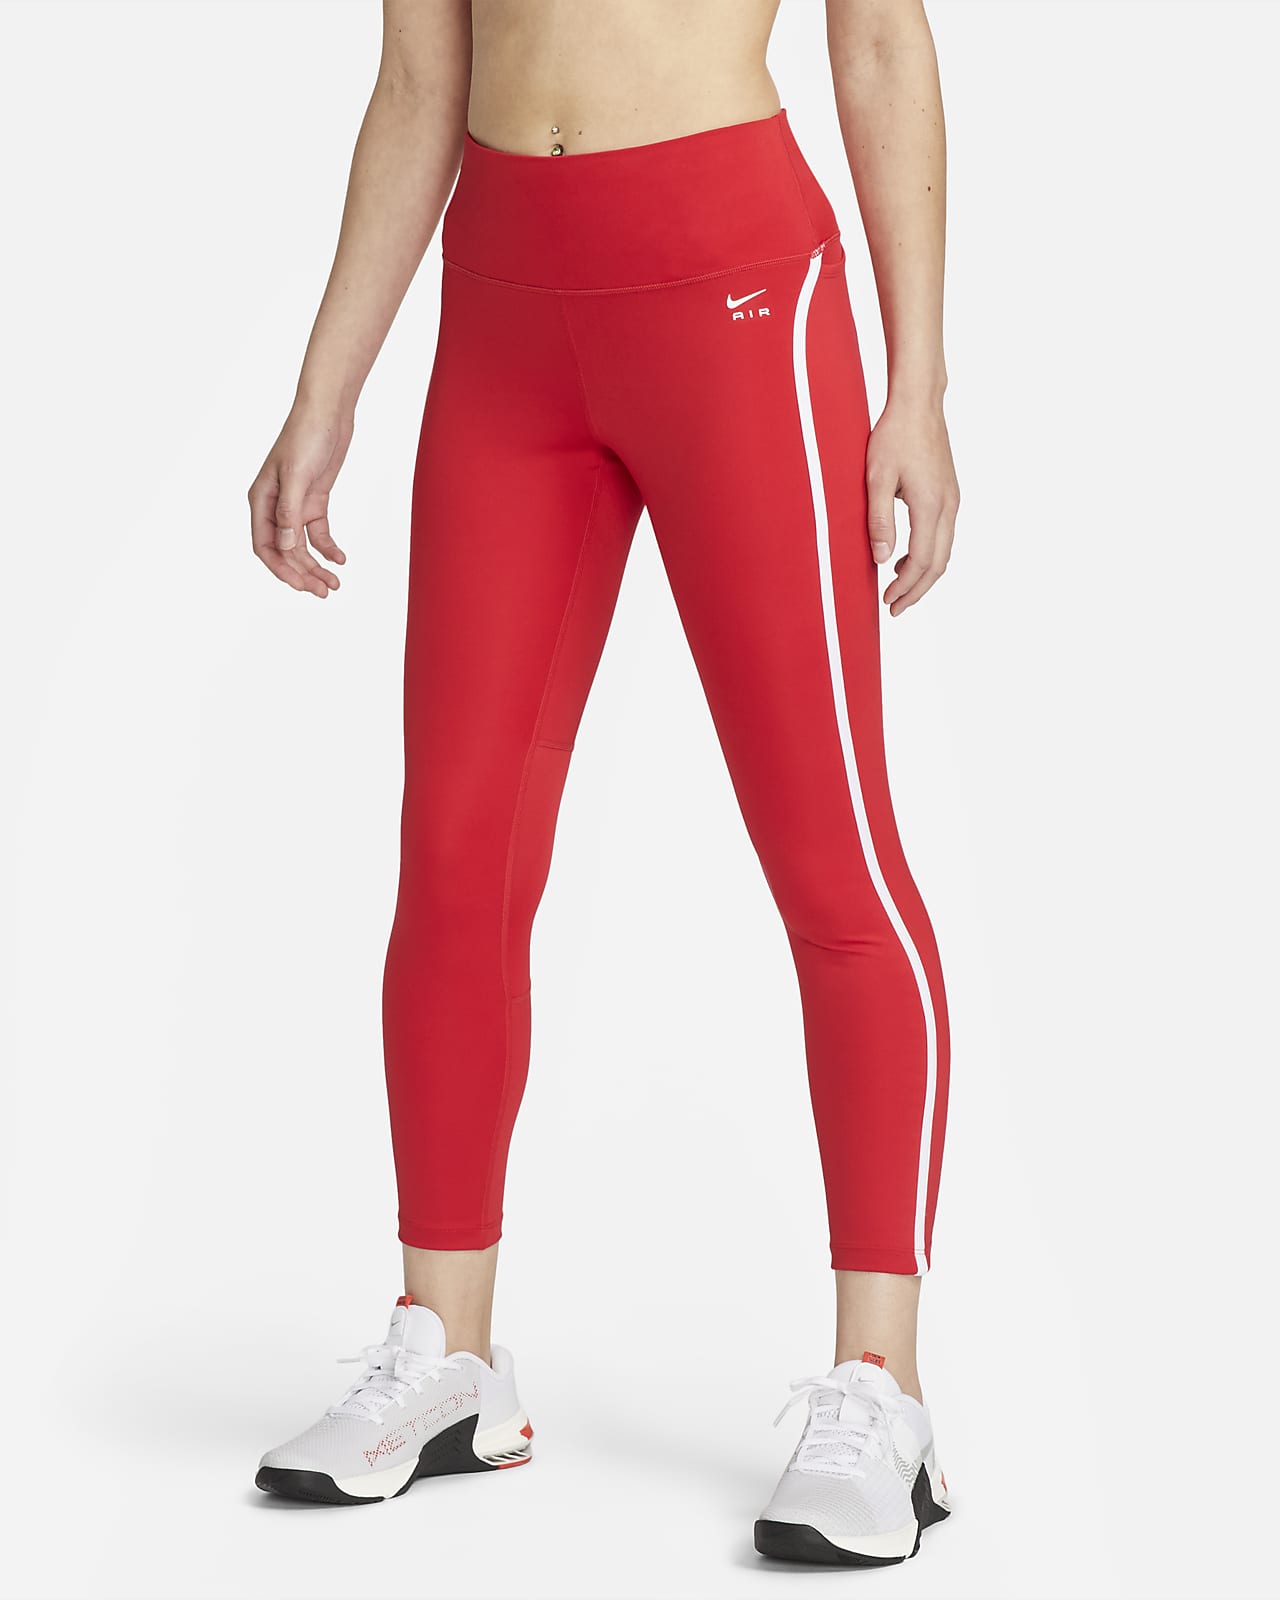 Nike Dri-Fit Essential Men's Small Running Pants - DB4107 084 | eBay